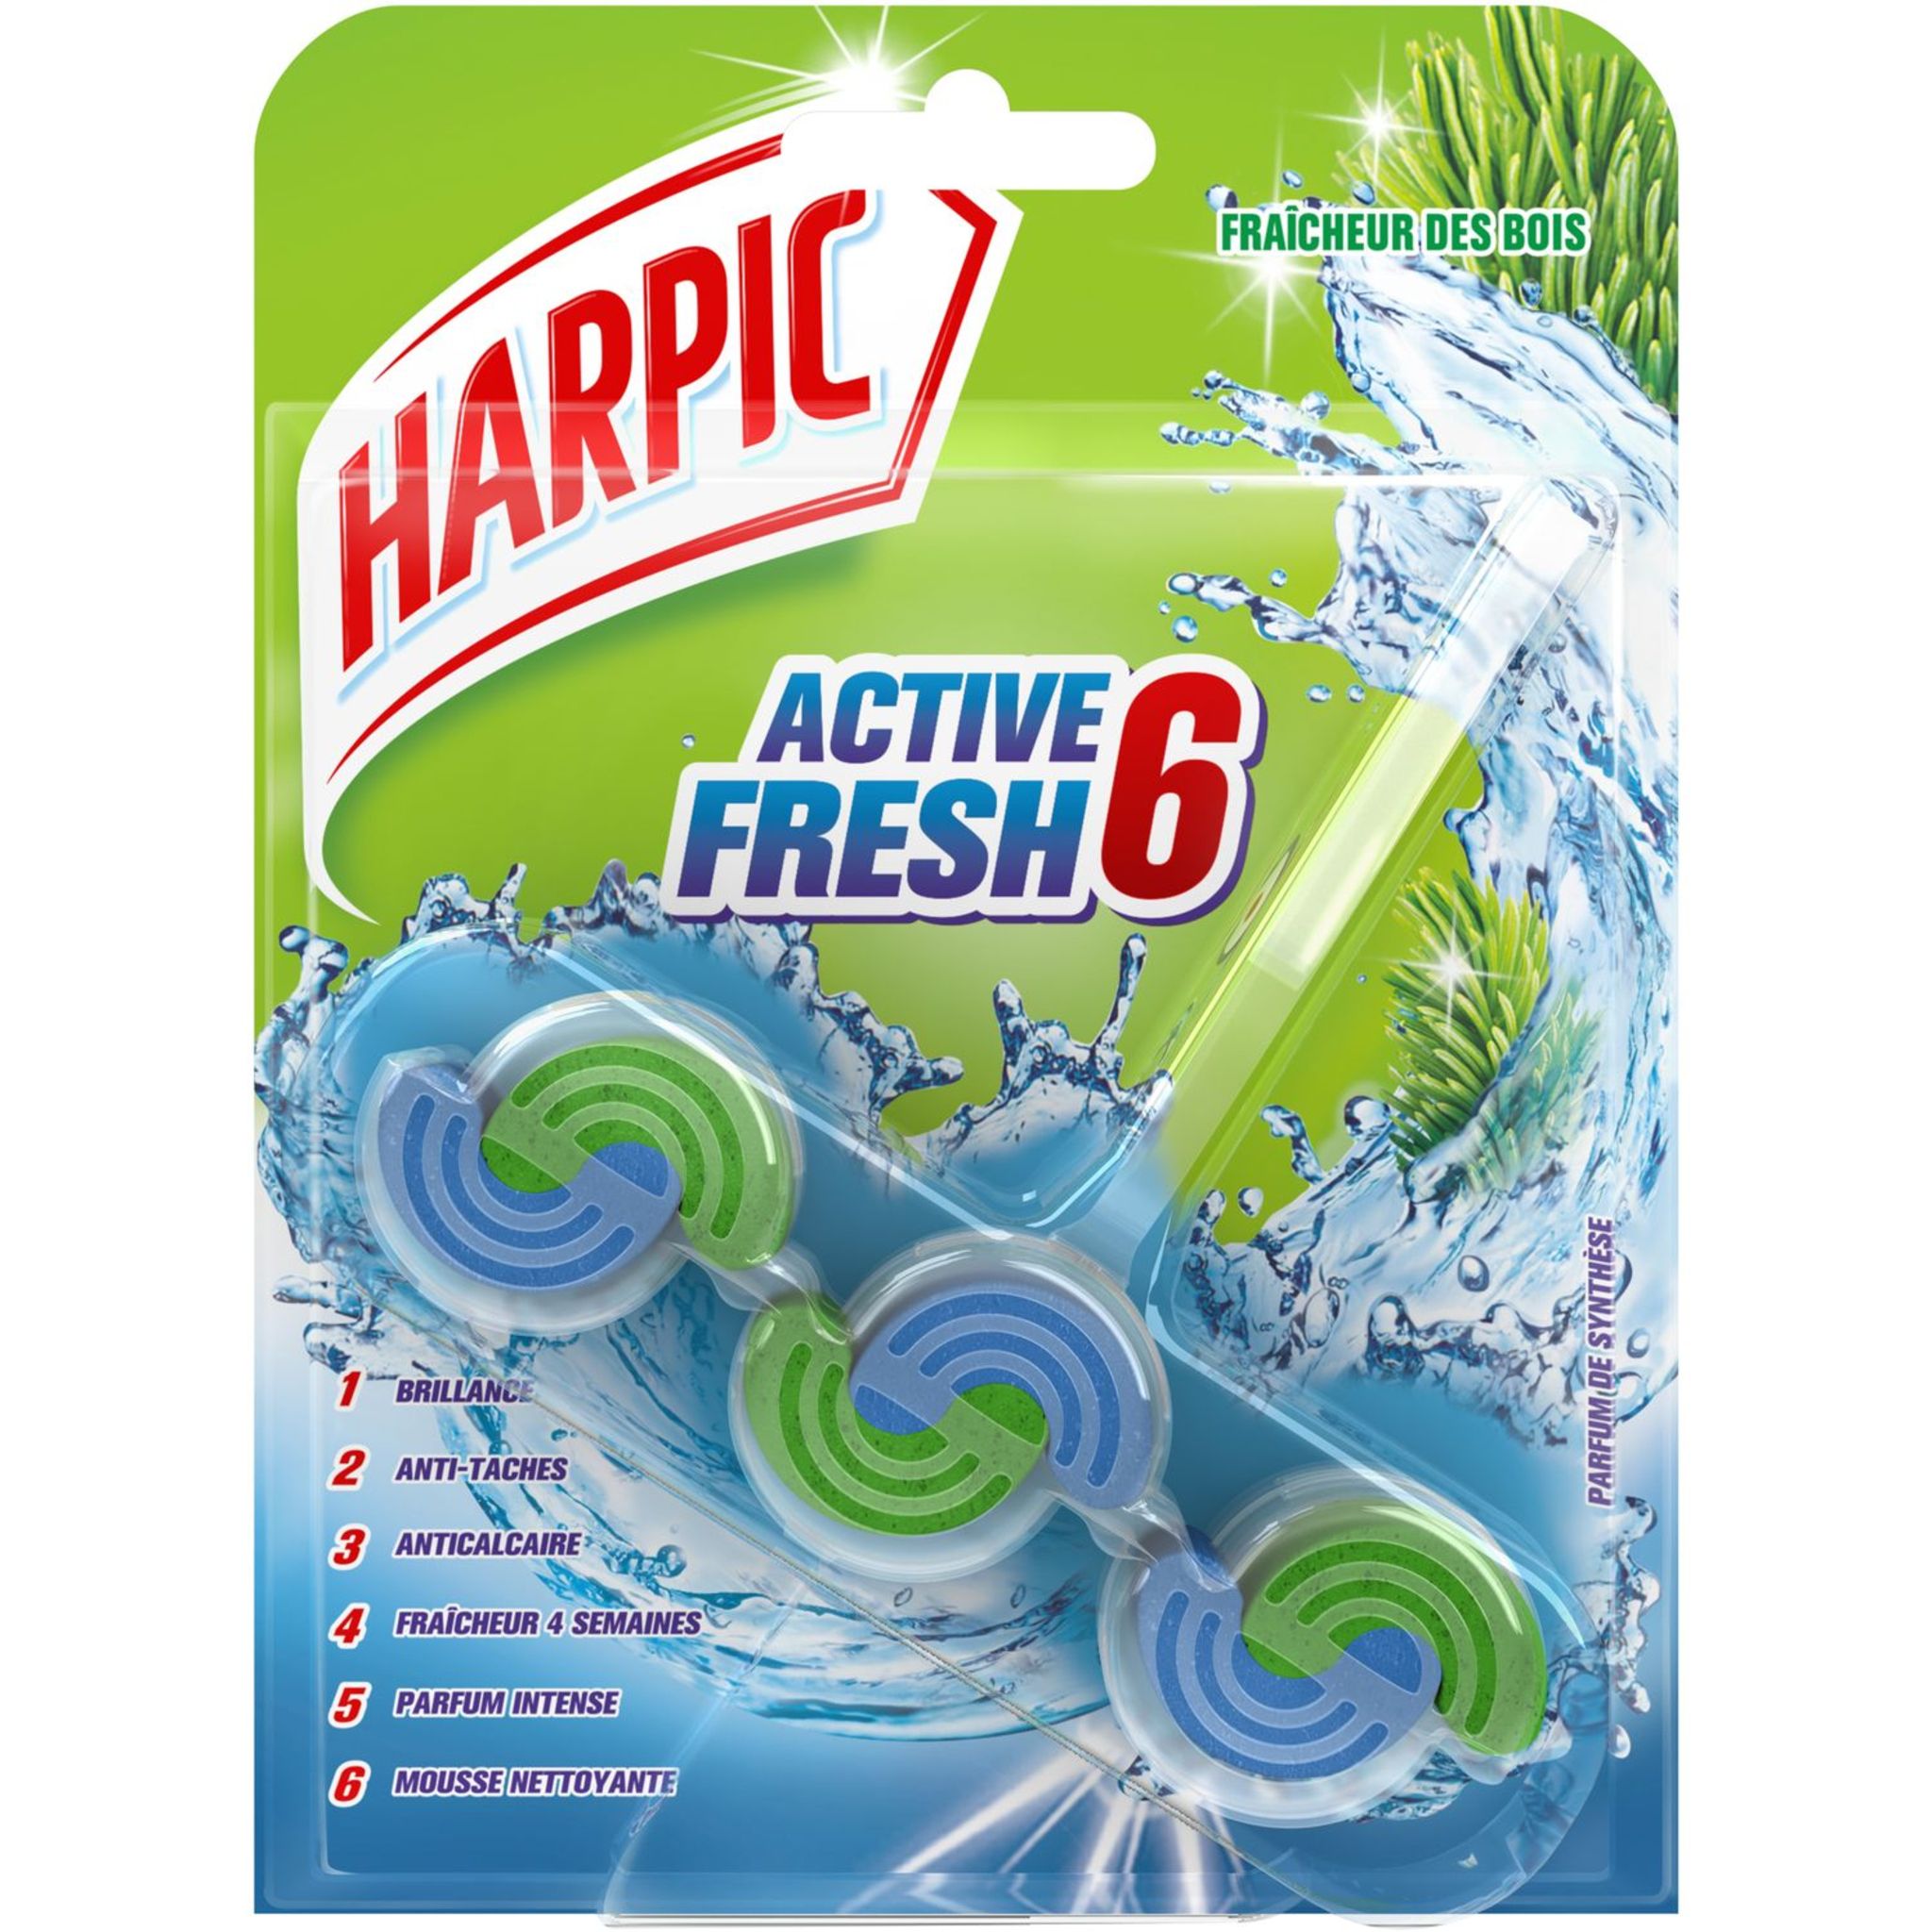 Harpic Bloc WC active fresh 6 blue power fraîcheur intense, 1 pièce